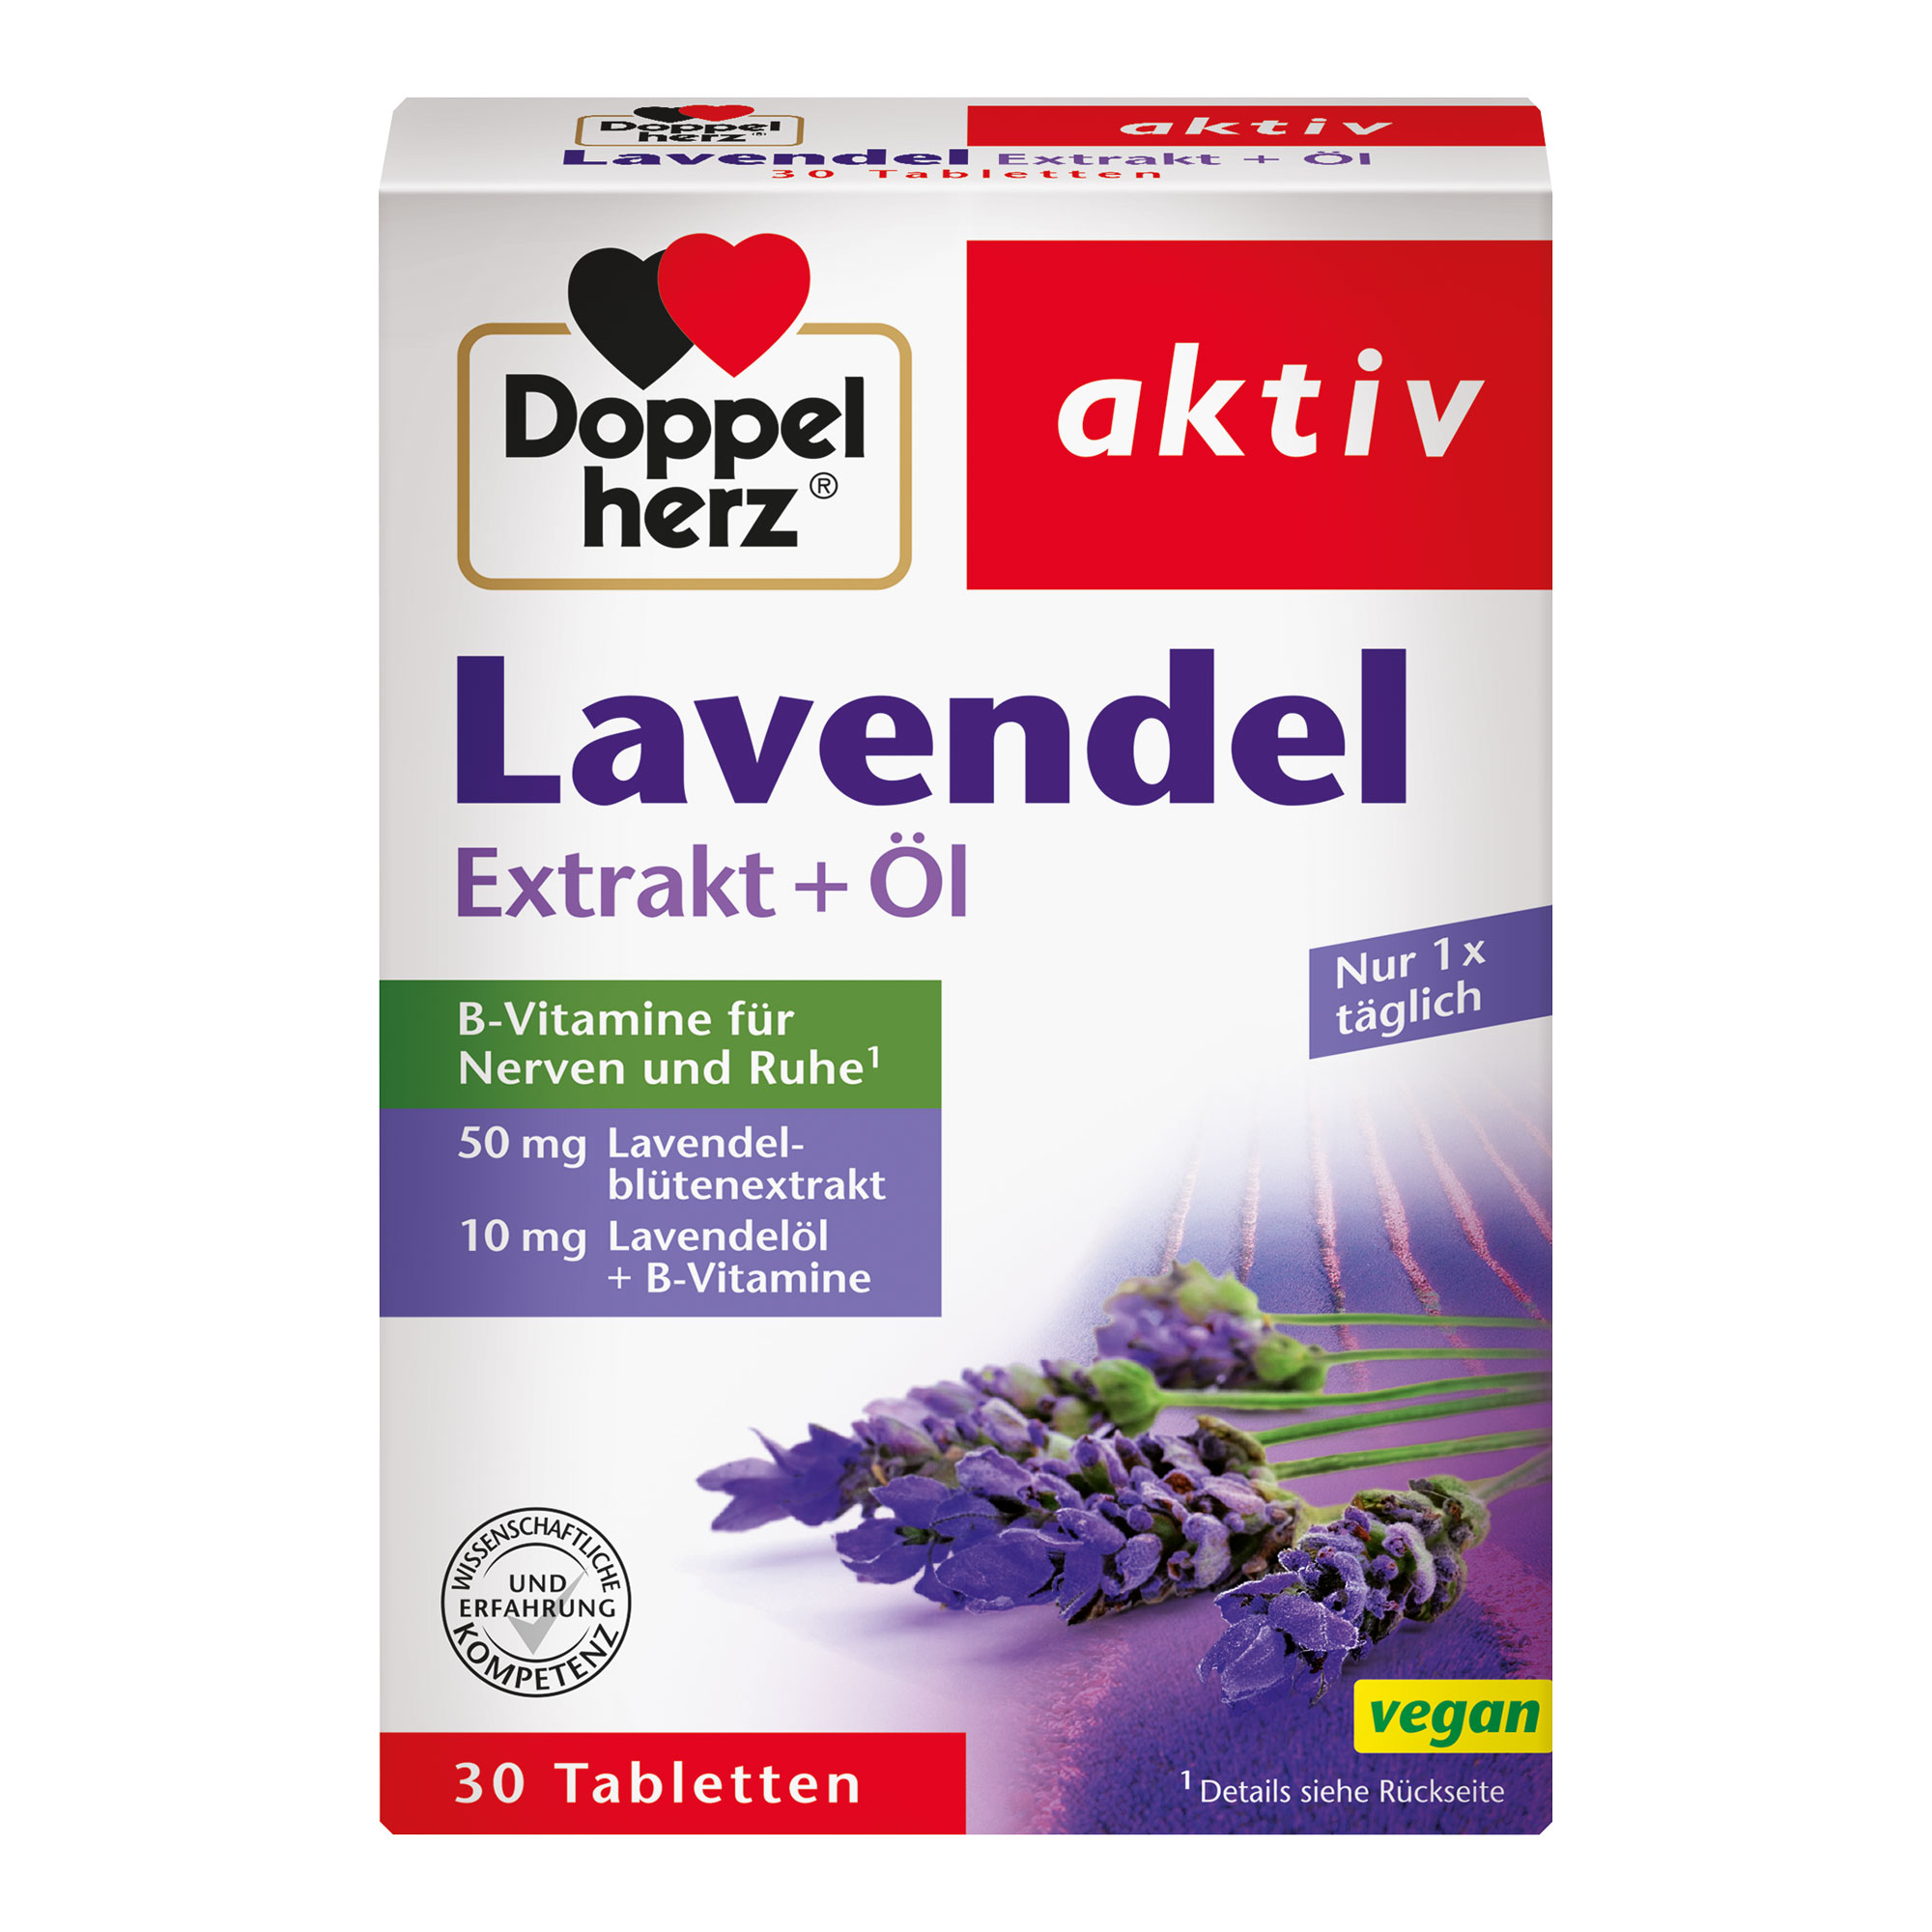 Nahrungsergänzungsmittel mit Lavendelblütenextrakt, Lavendelöl und B-Vitaminen.